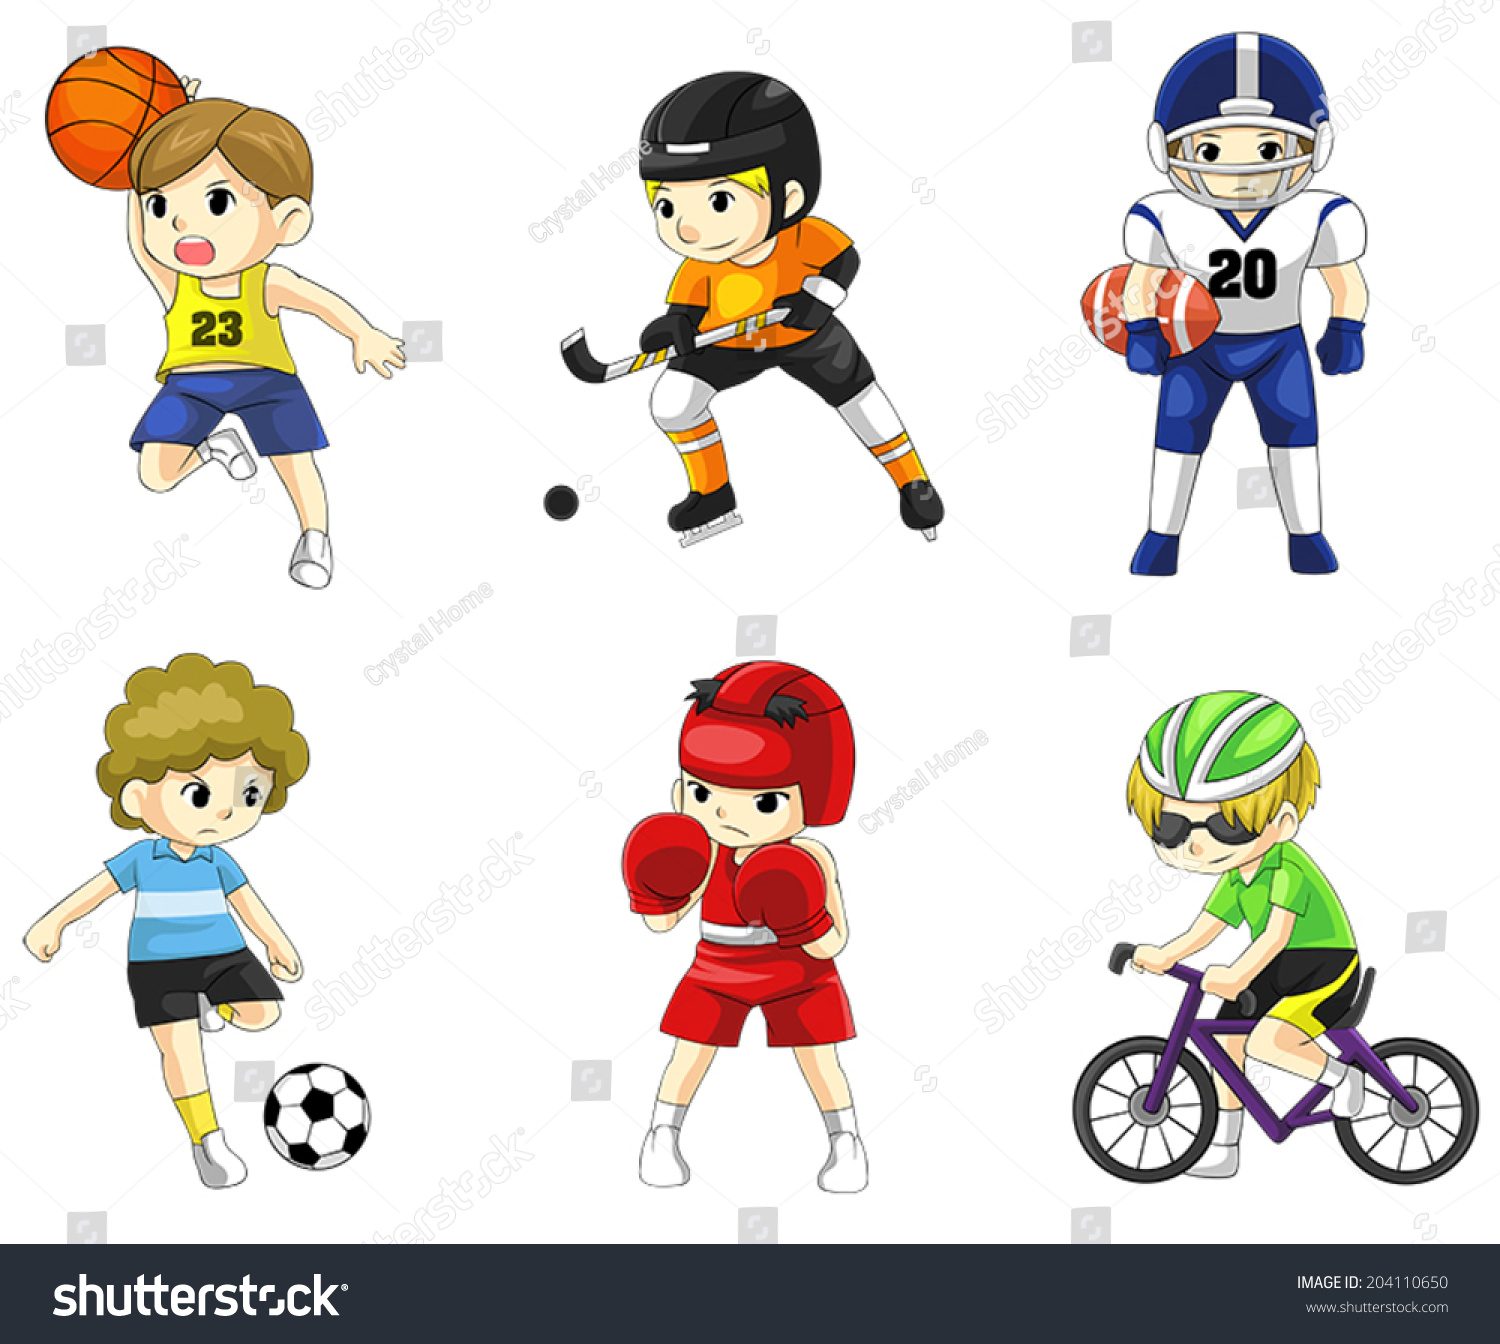 Фигурки спортсменов разных видов спорта